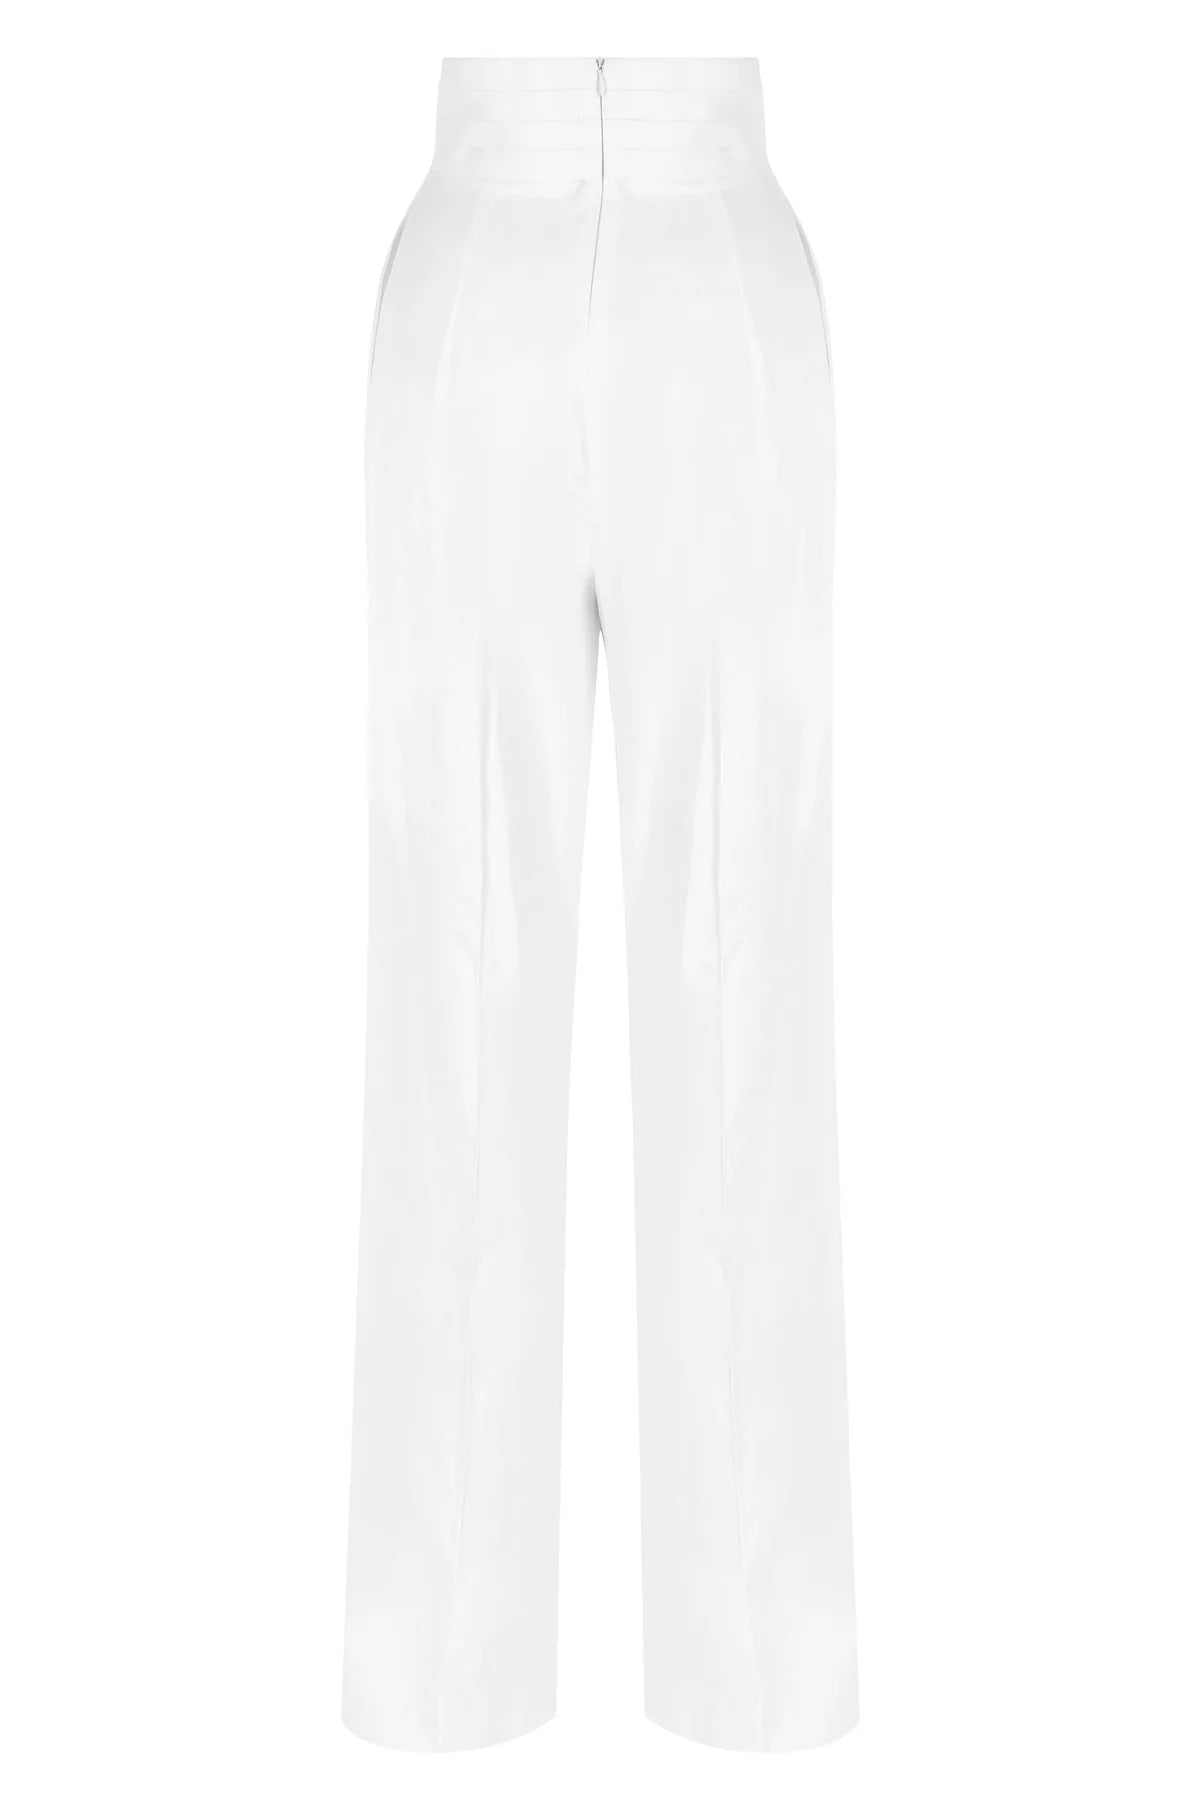 Gisele - White Pants